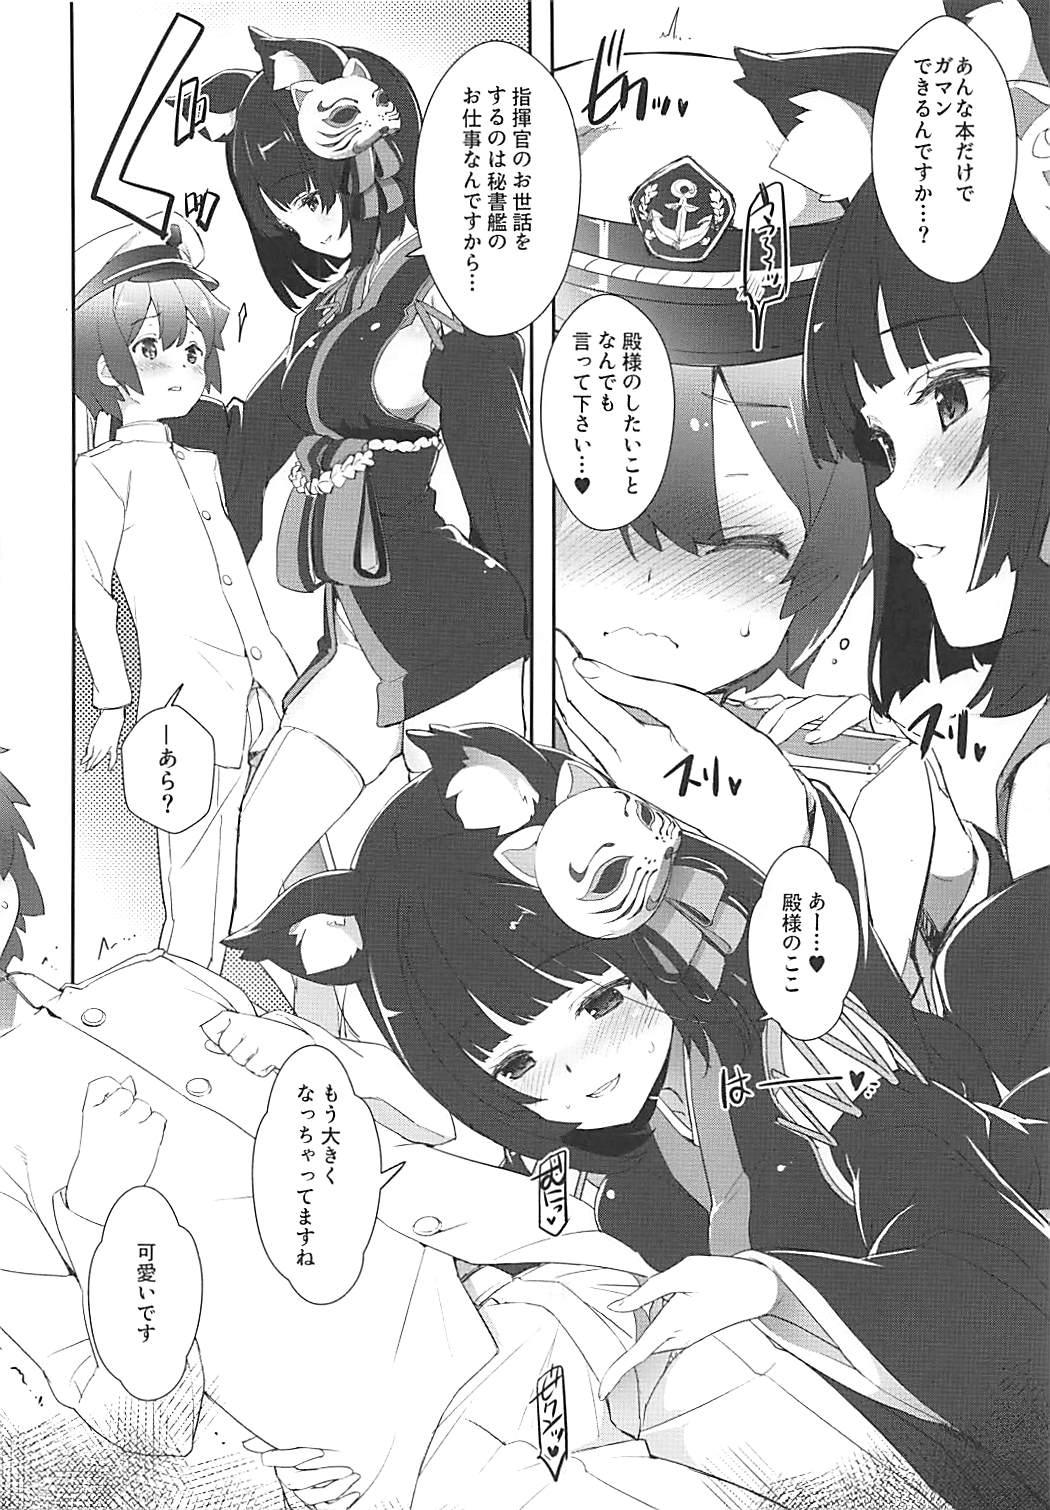 Just Wanna Flirt with Sakura Empire's Battleships - Juuou Senkan ni Amaetai 20